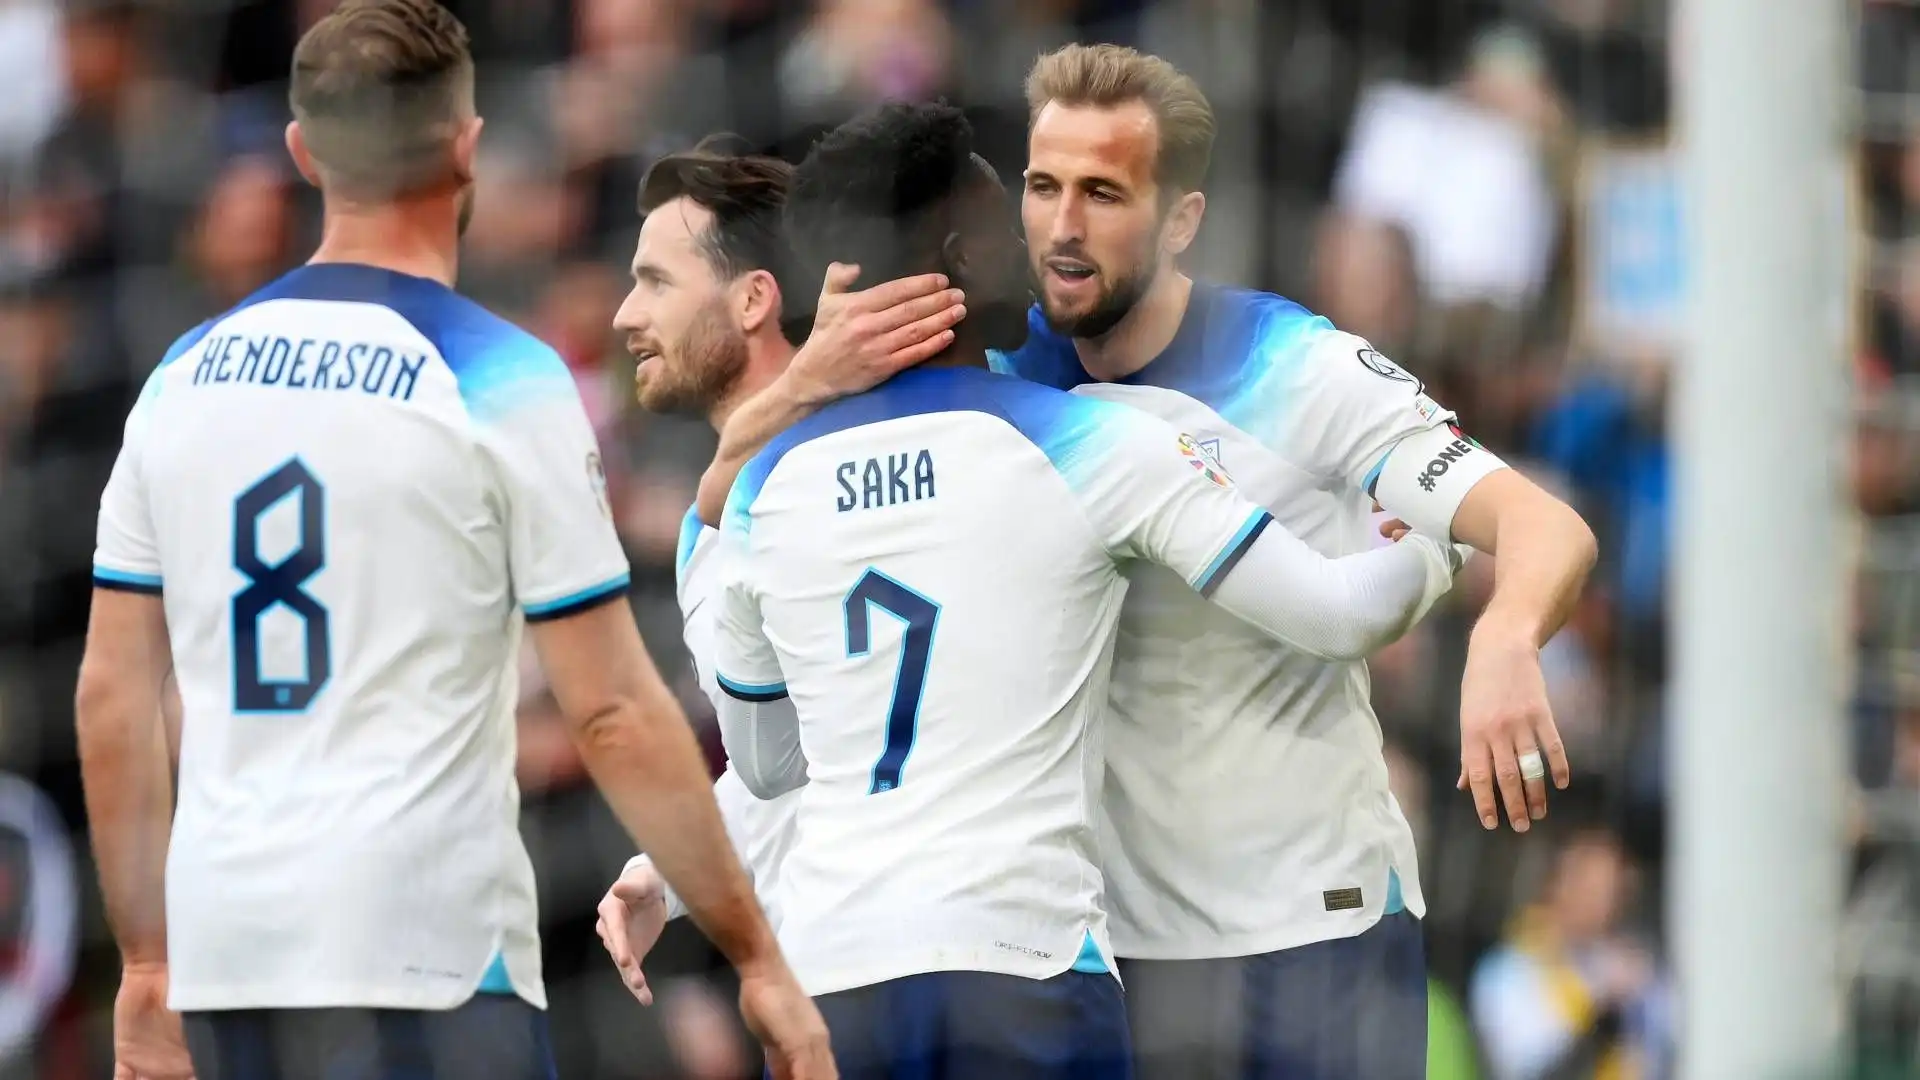 L'Inghilterra batte 2-0 l'Ucraina grazie ai gol di Kane e Saka